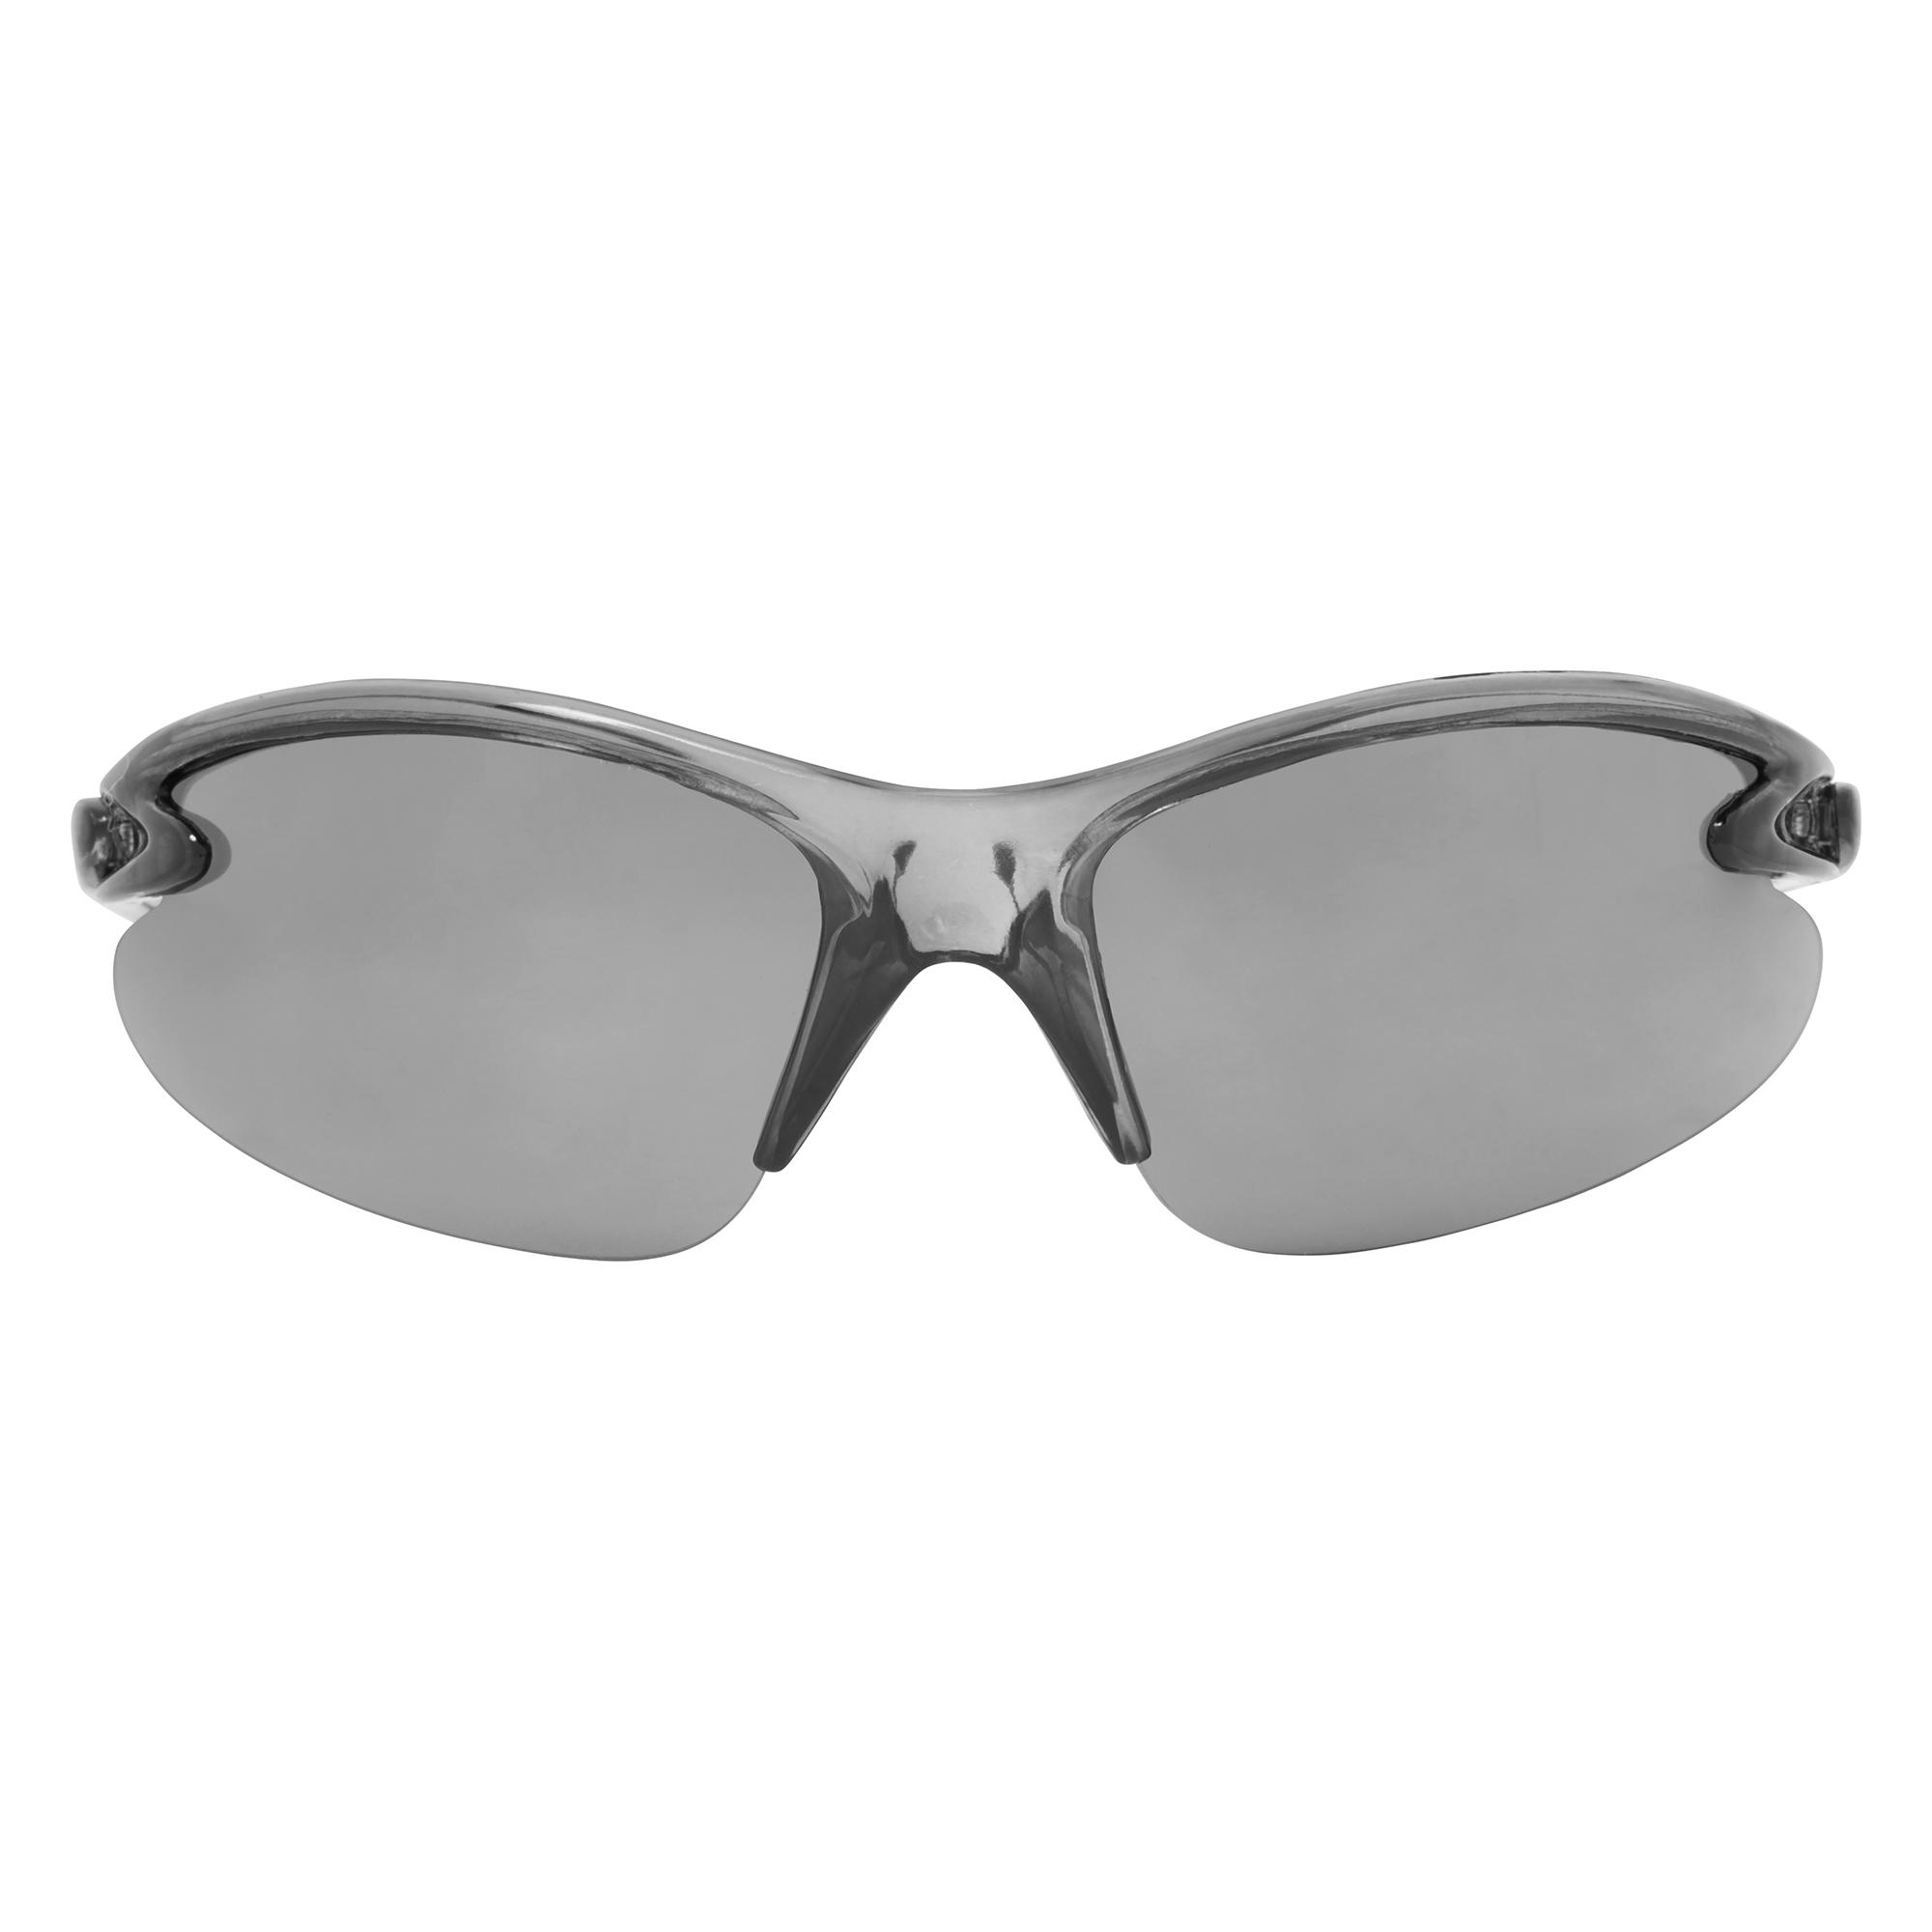 Dhb Triple Lens Sunglasses - Smoke